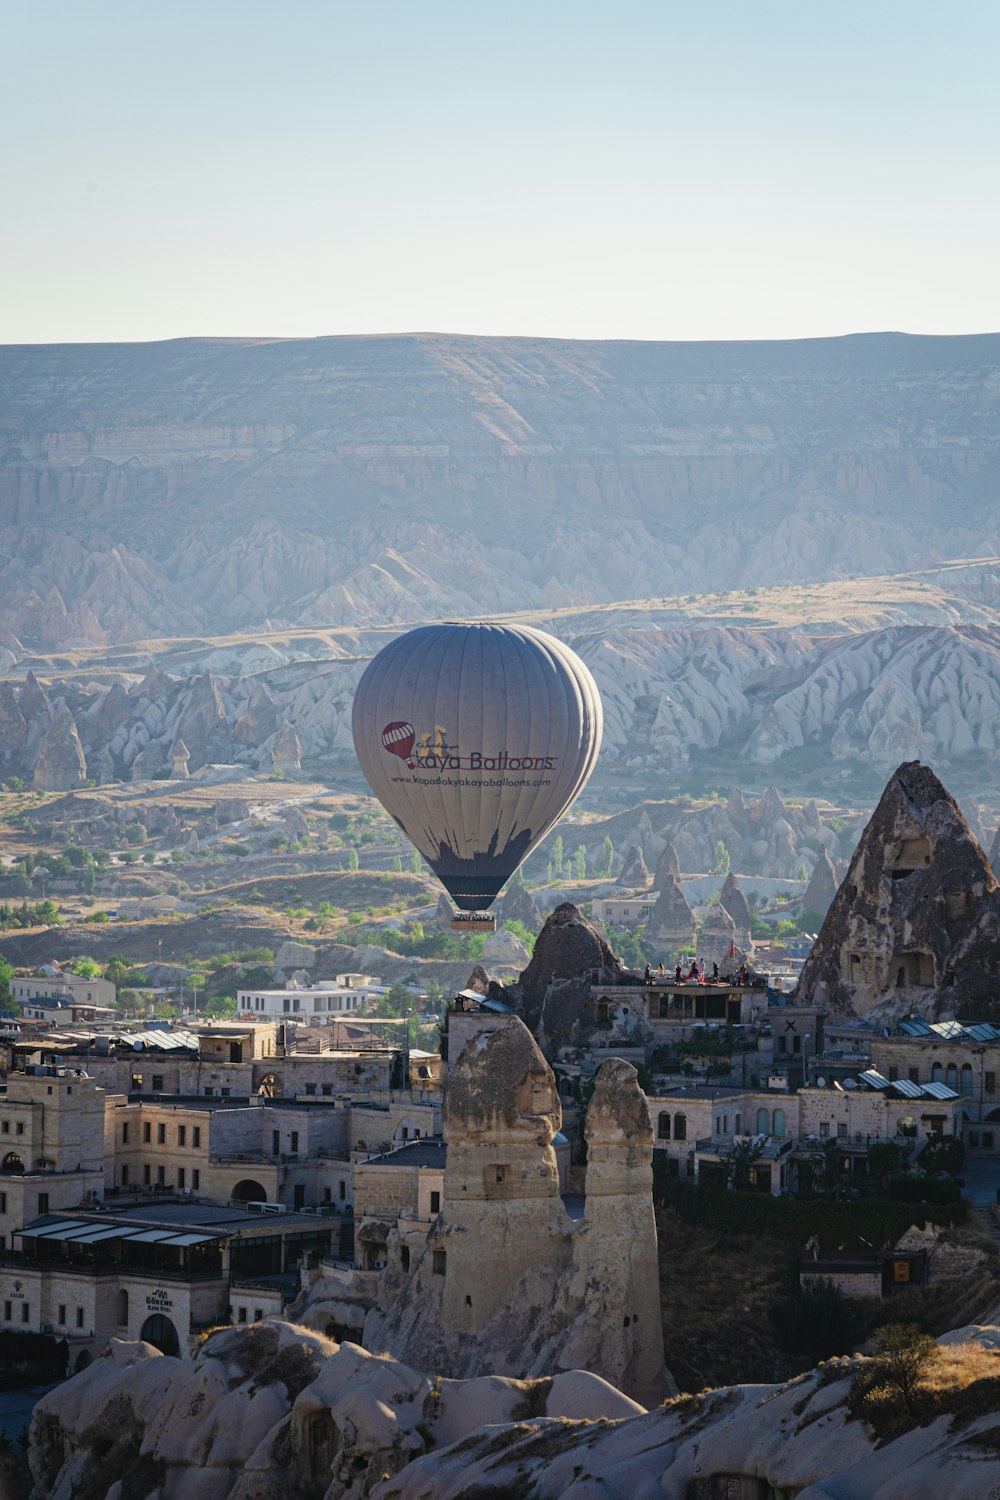 a hot air balloon over a city